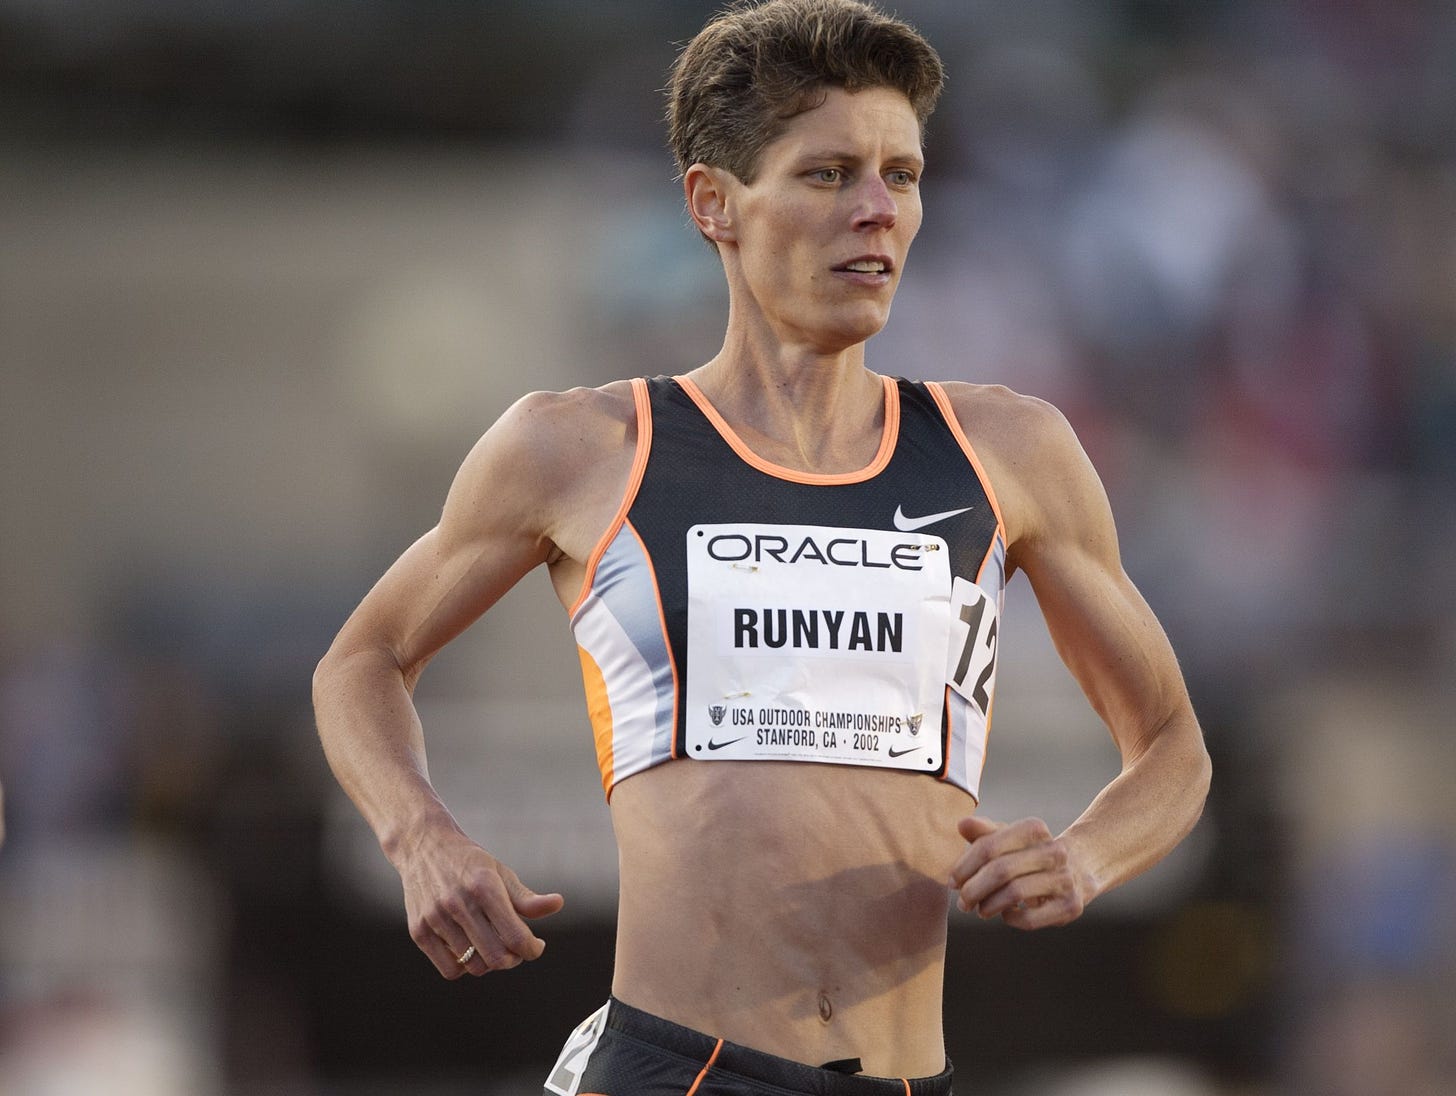 Marla Runyan | Runner's World